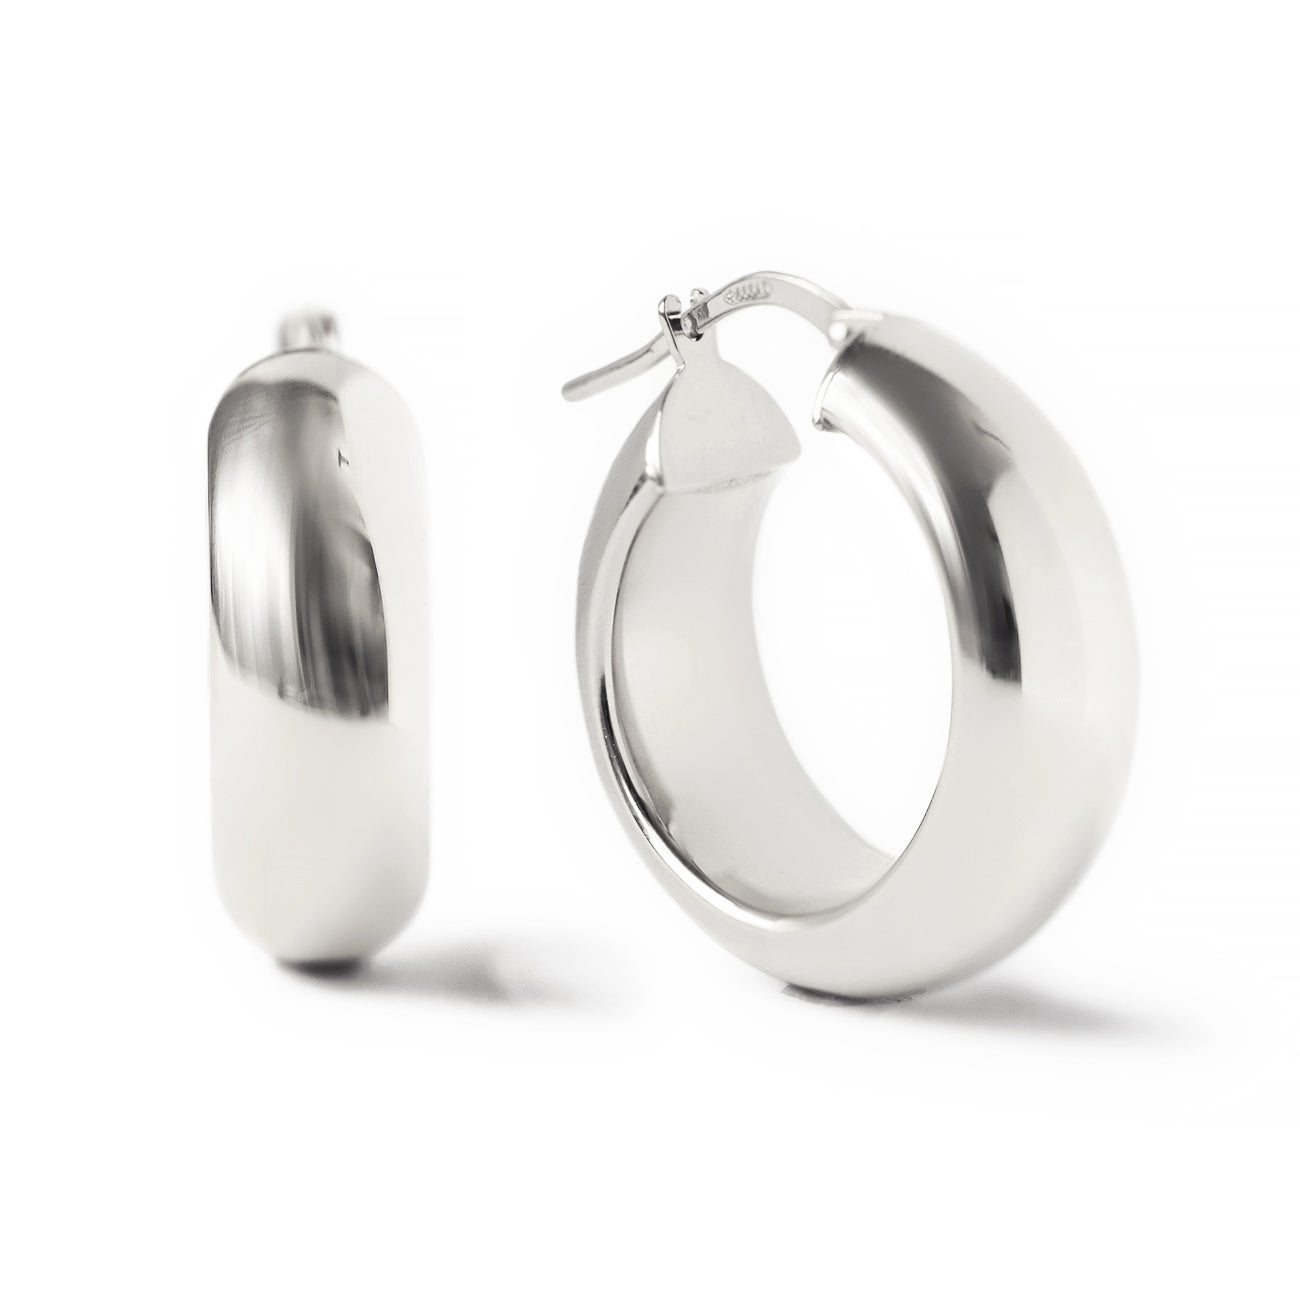 Silver Hoops Earrings in Filigree art by Silver Linings – Silverlinings